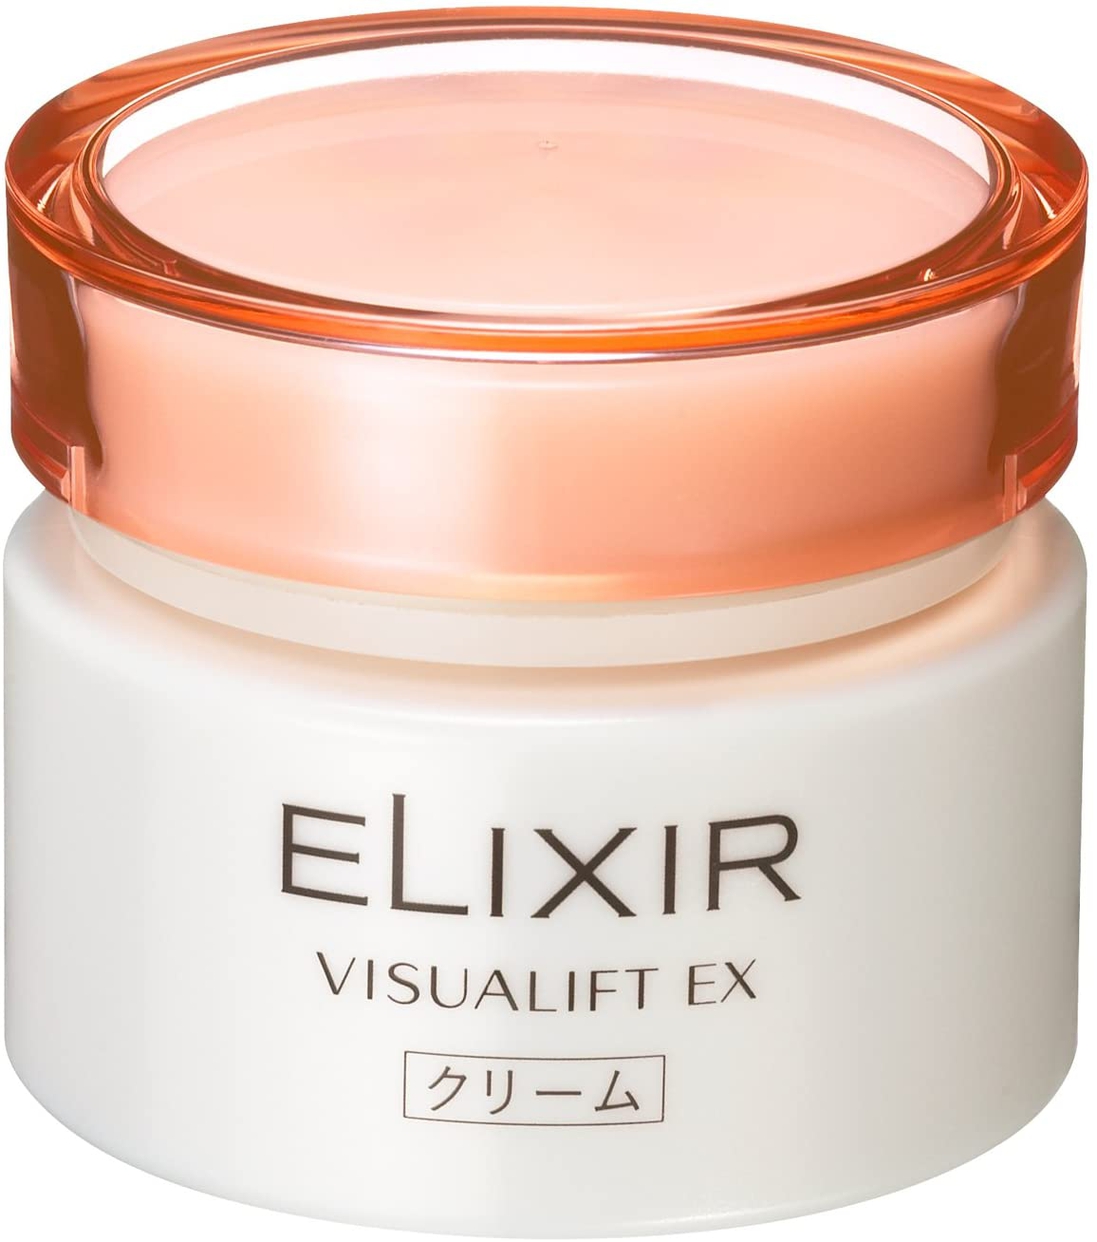 ELIXIR(エリクシール) ヴィジュアリフト EXの商品画像3 